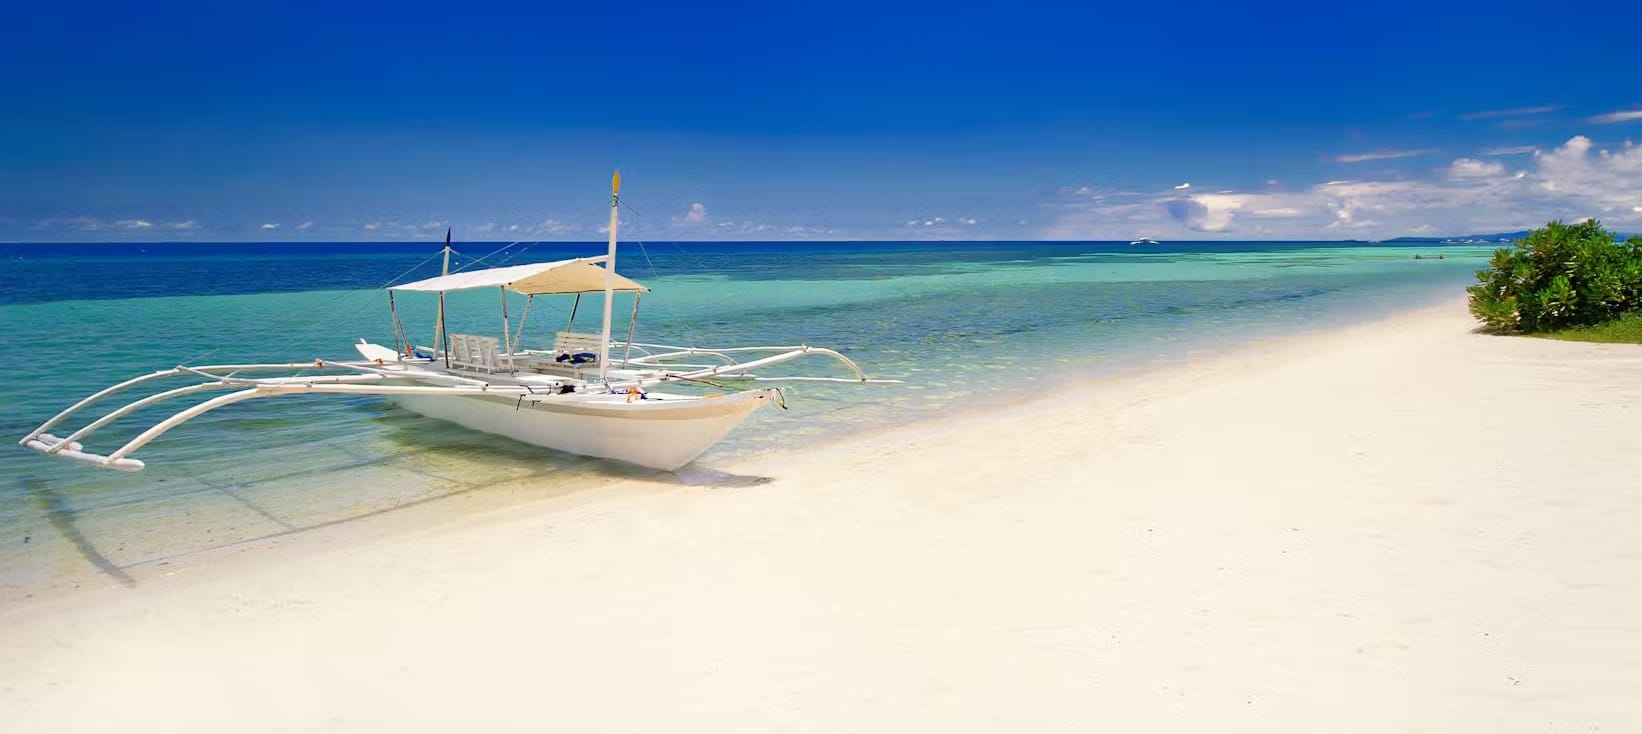 Banka typique des Philippines posée sur le sable blanc d'une plage paradisiaque de Bohol dans l'archipel des Visayas